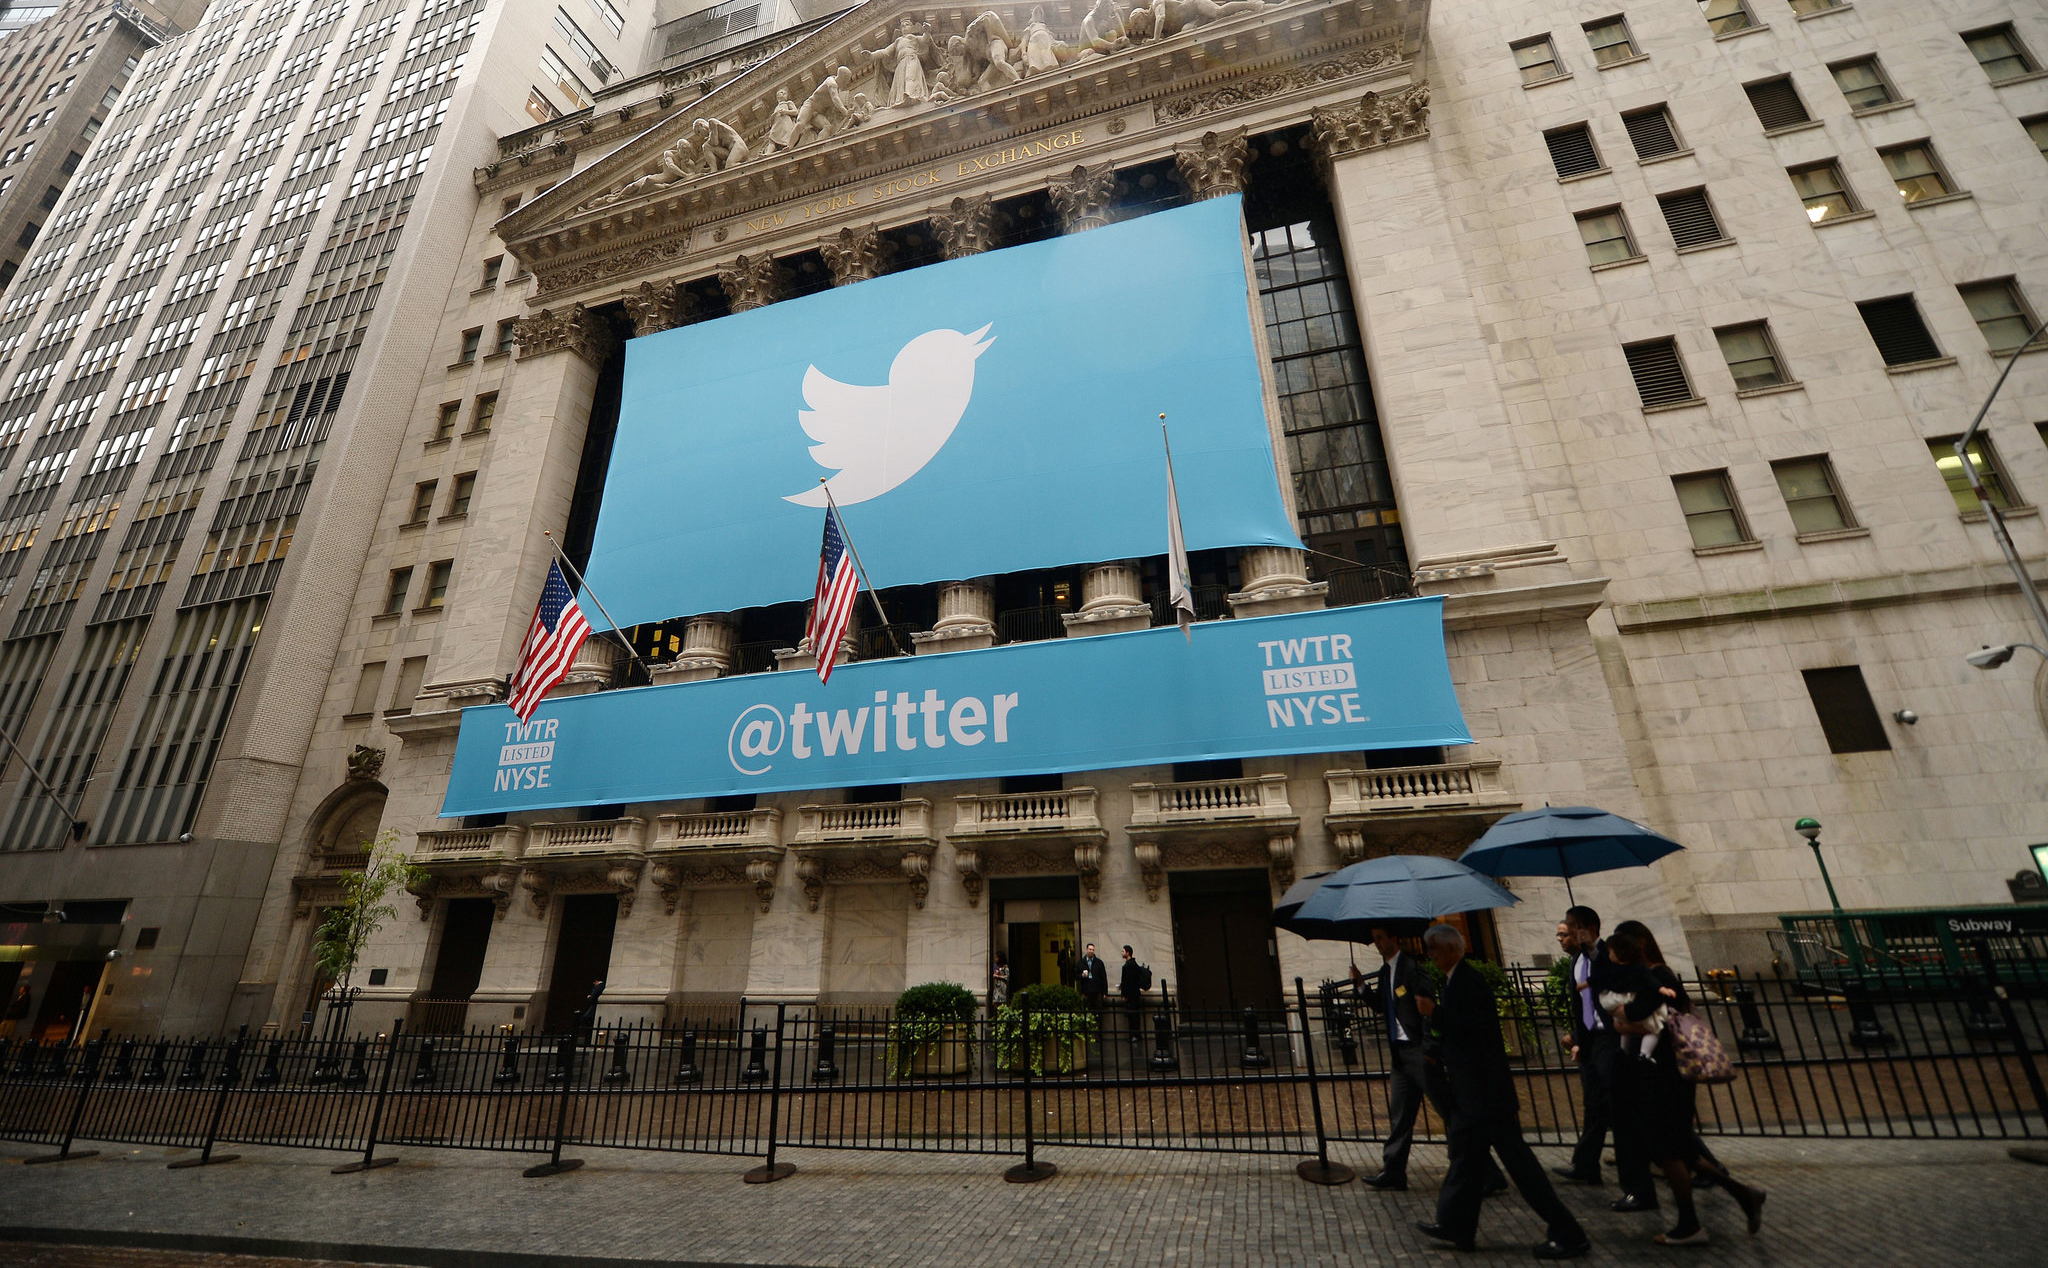 Nga sẽ tiếp tục giảm tốc độ đường truyền của Twitter cho đến khi tất cả nội dung cấm được xoá